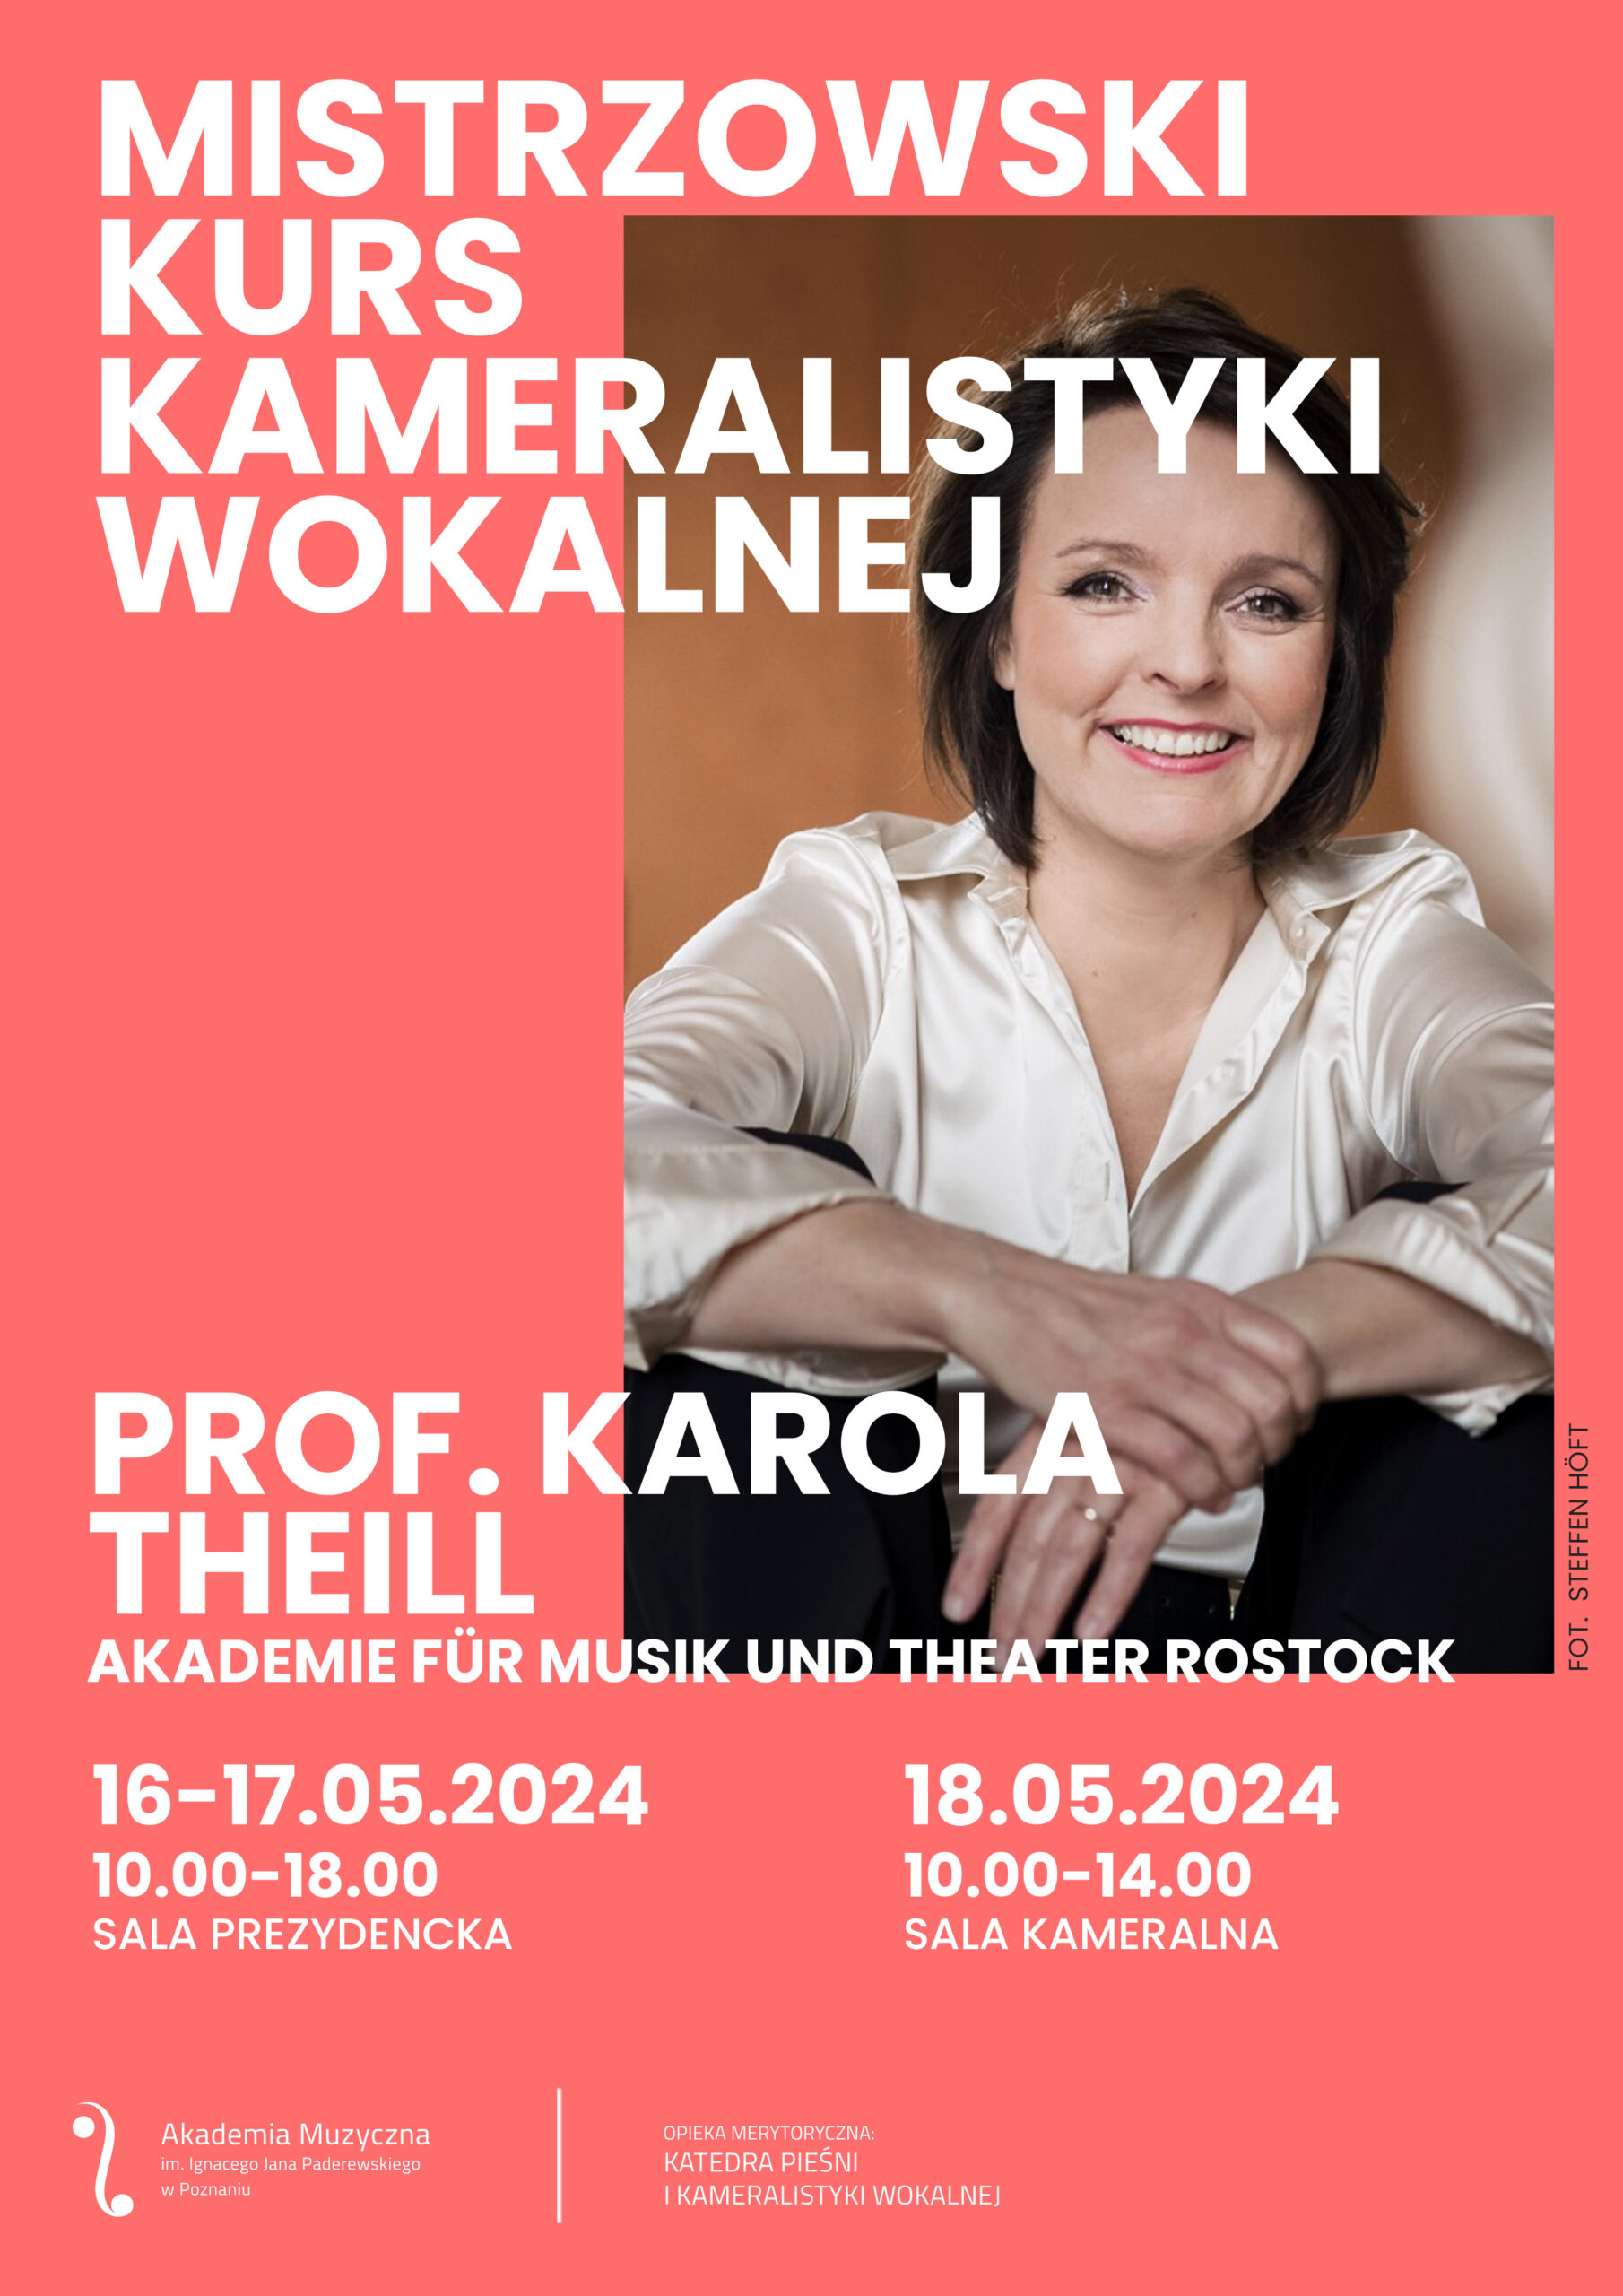 Plakat zawiera informacje na temat kursów mistrzowskich prof. Karoli Theill w dniach 16-18.05.2024